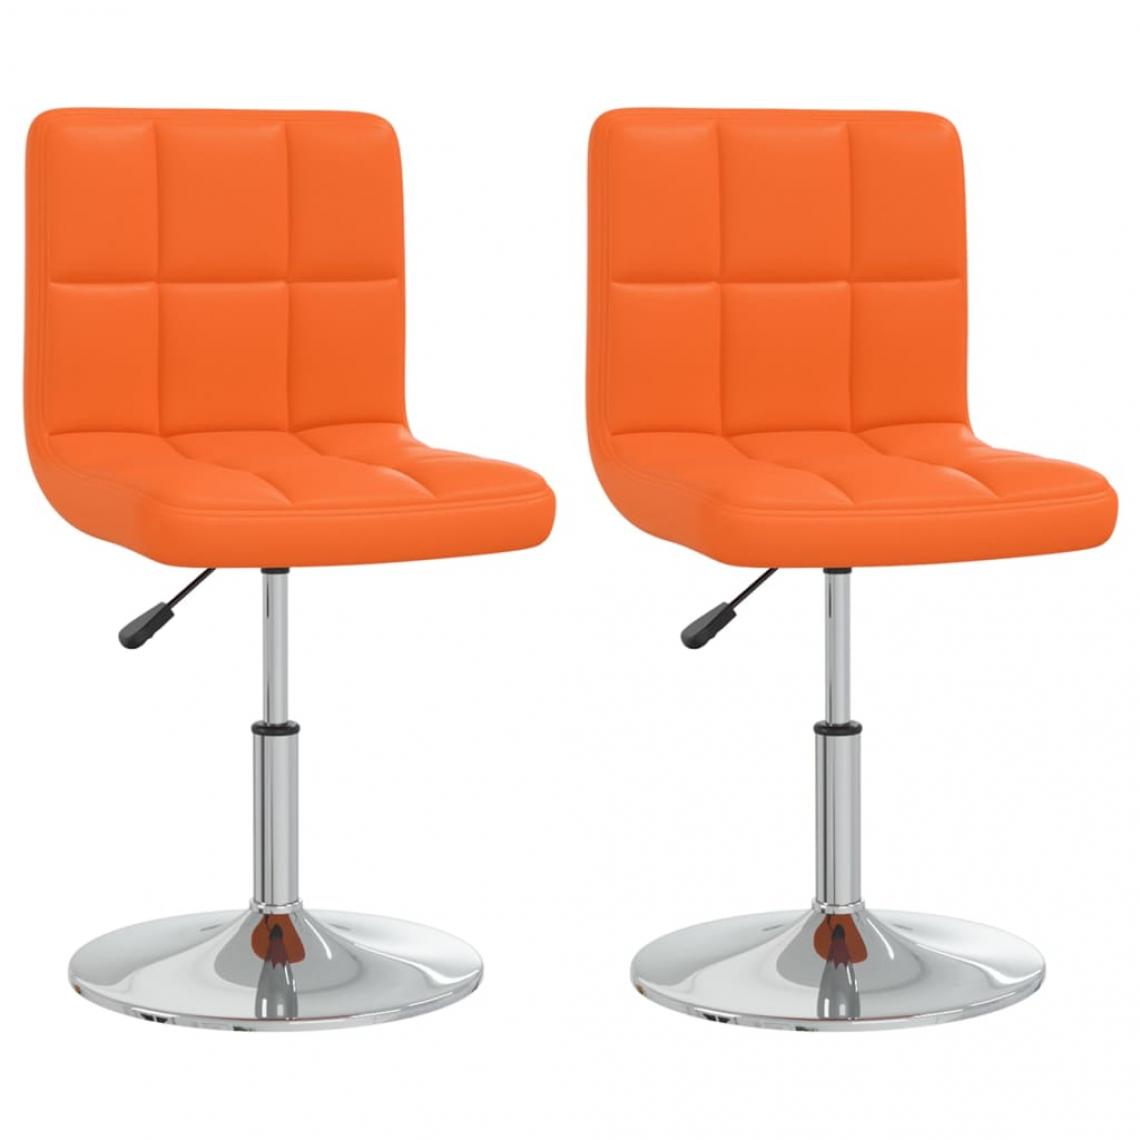 Decoshop26 - Lot de 2 chaises de salle à manger cuisine design contemporain similicuir orange CDS020902 - Chaises